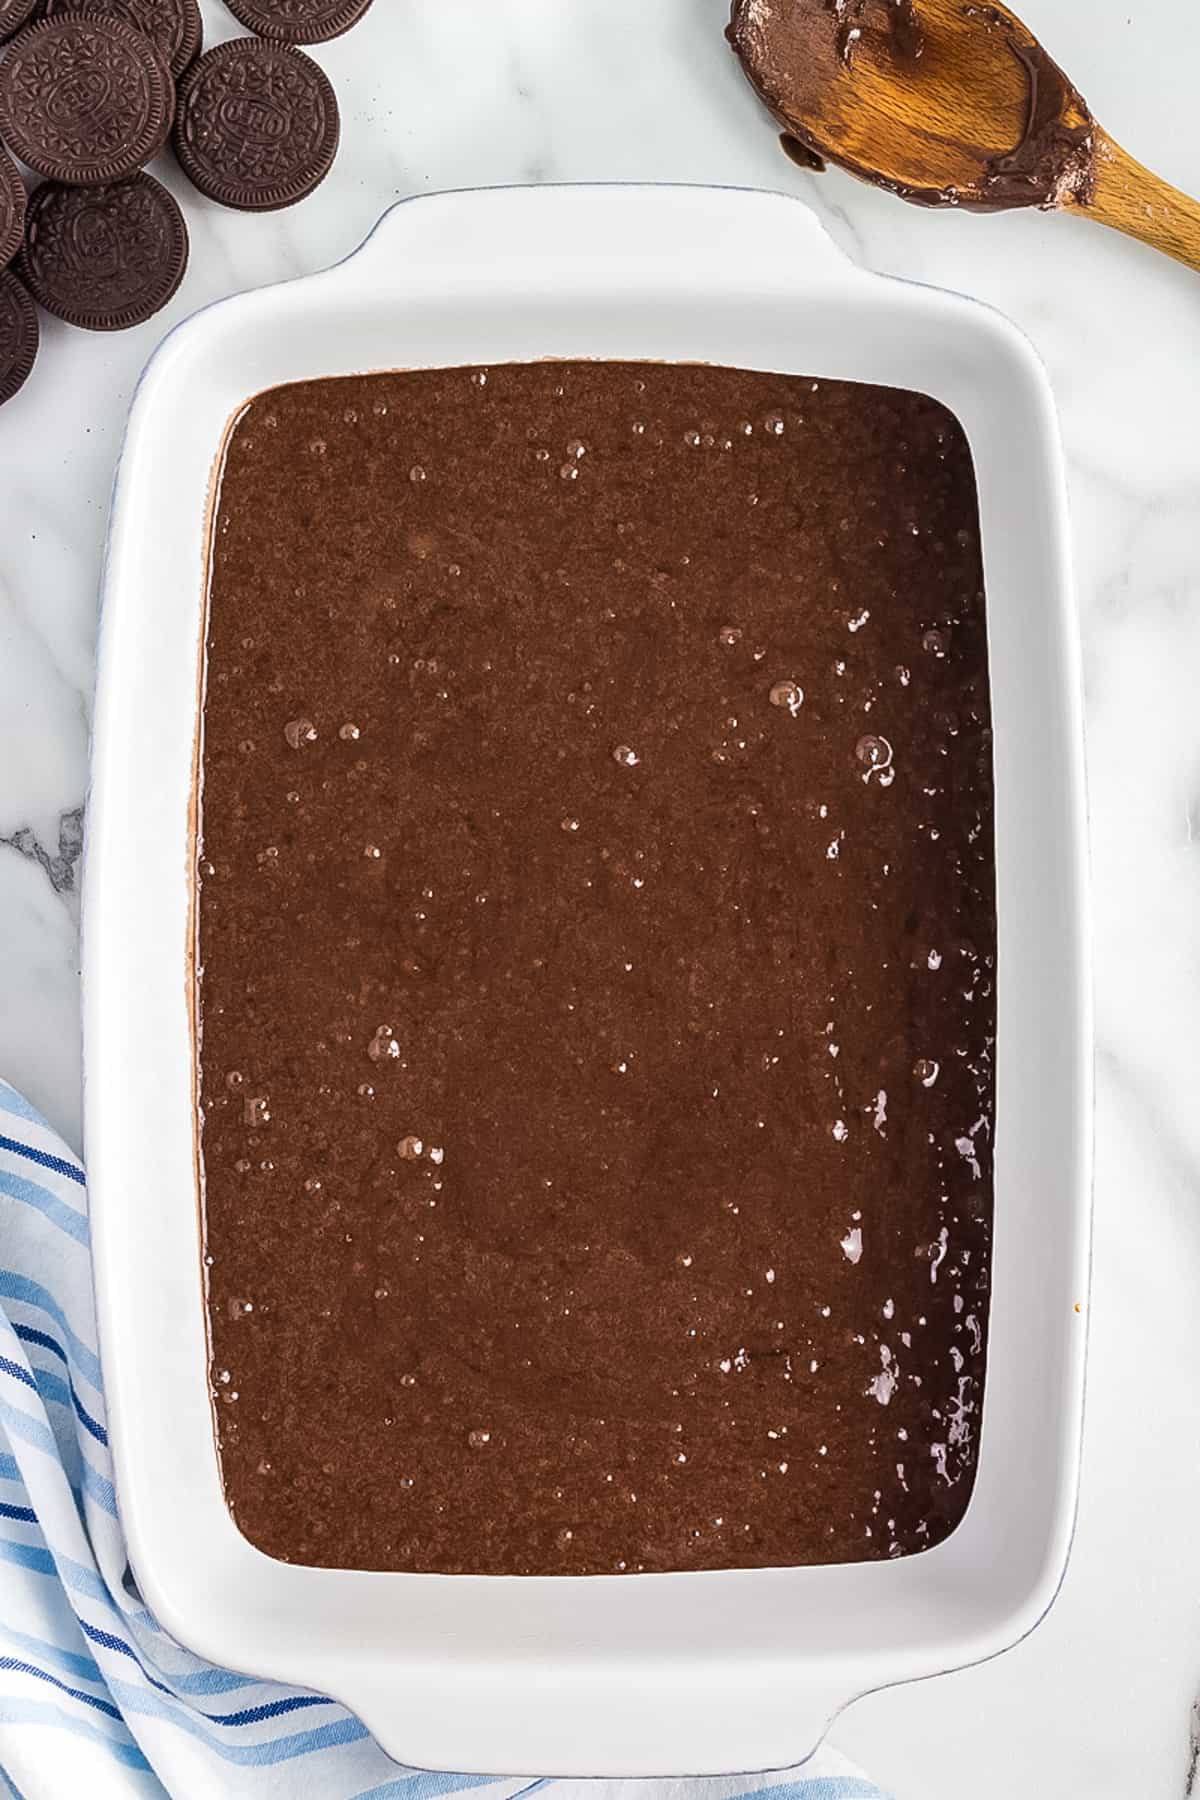 Chocolate Cake Mix in white baking pan